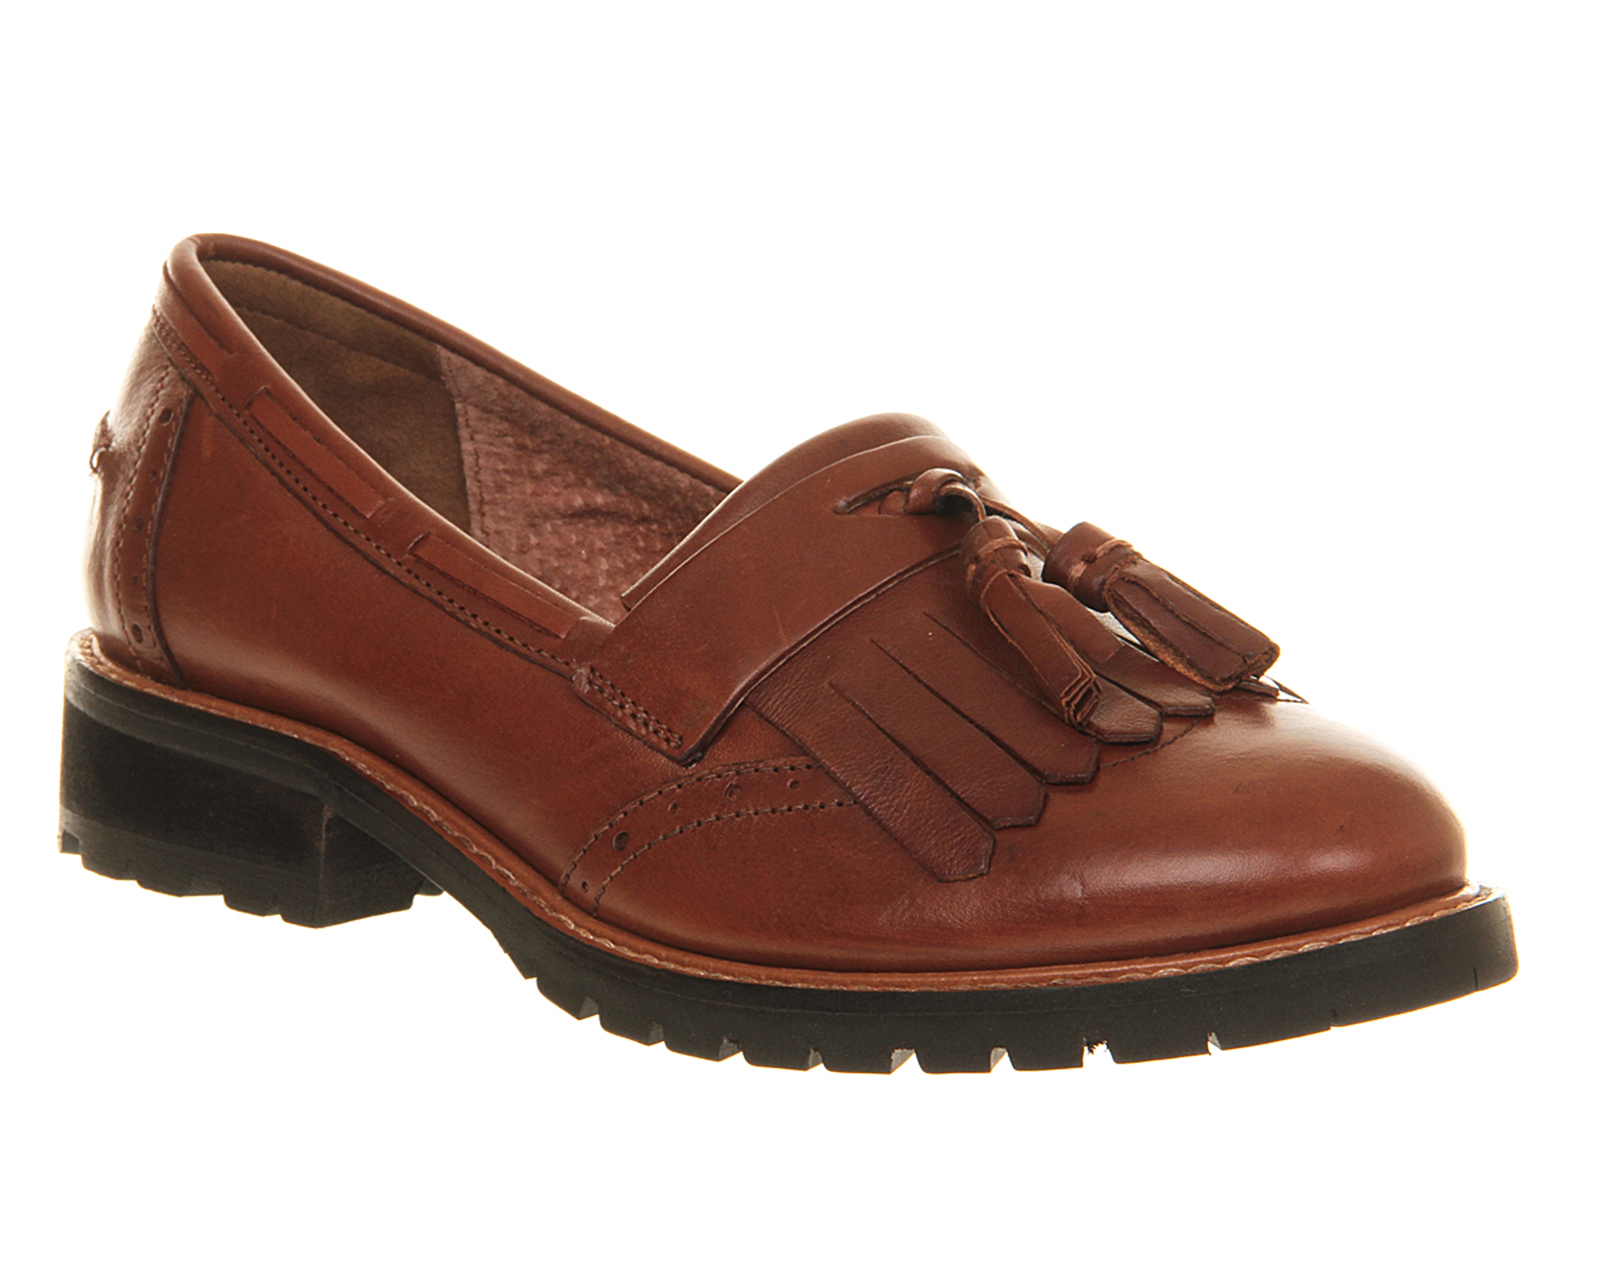 OFFICEViva Tassel Cleated loafersTan Leather